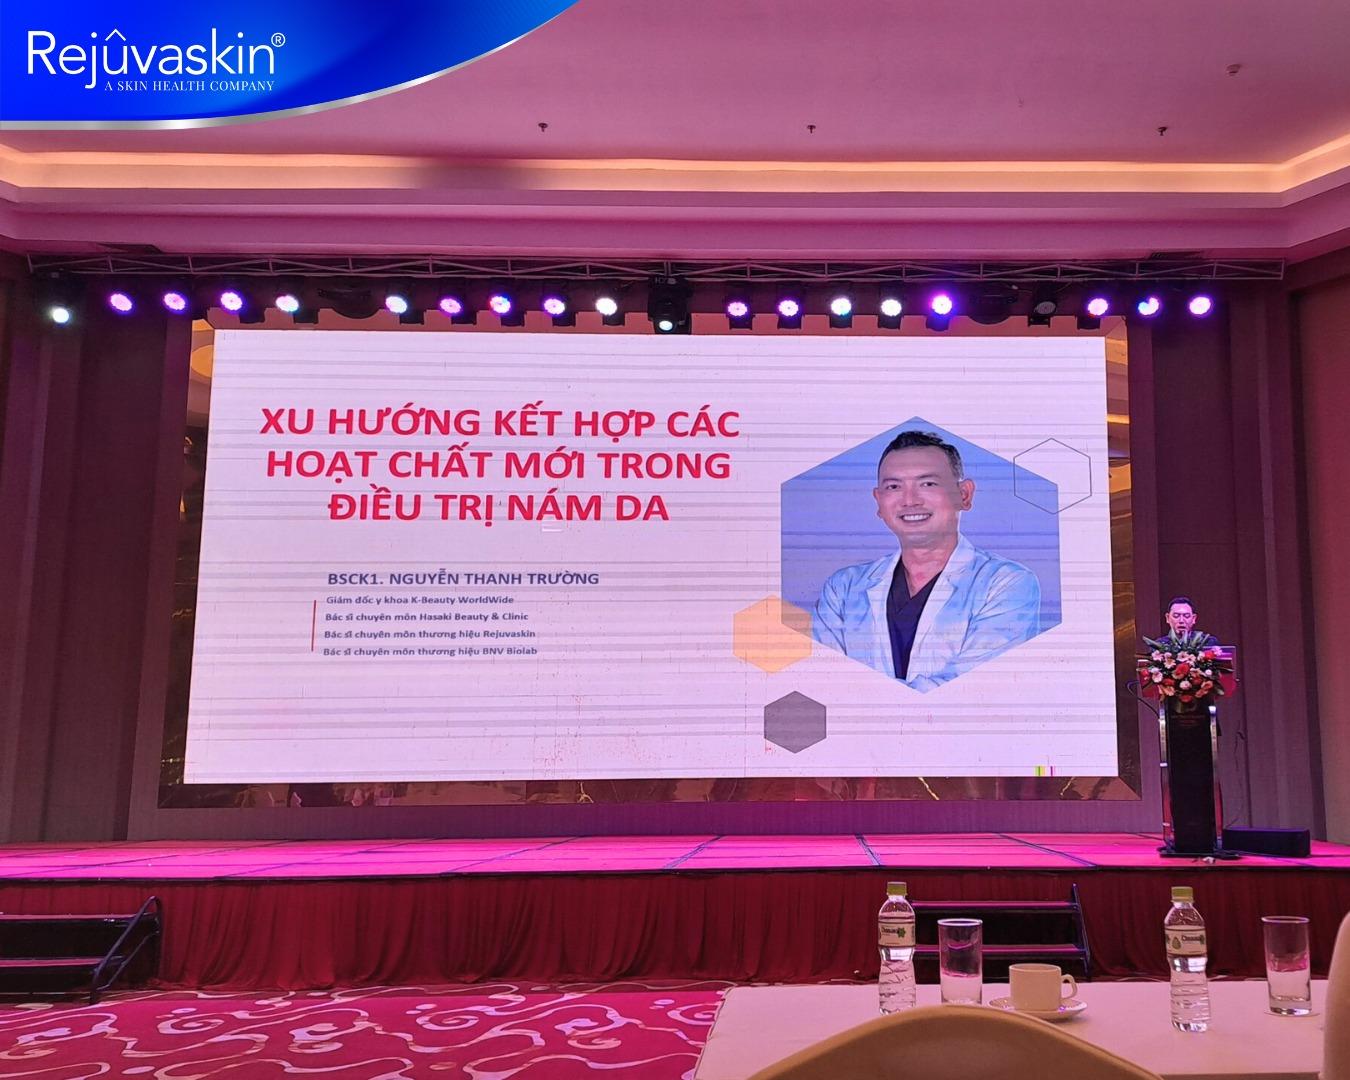 Rejuvaskin Việt Nam đã có mặt tại Hội nghị da liễu học Mekong Cà Mau- Ảnh 6.